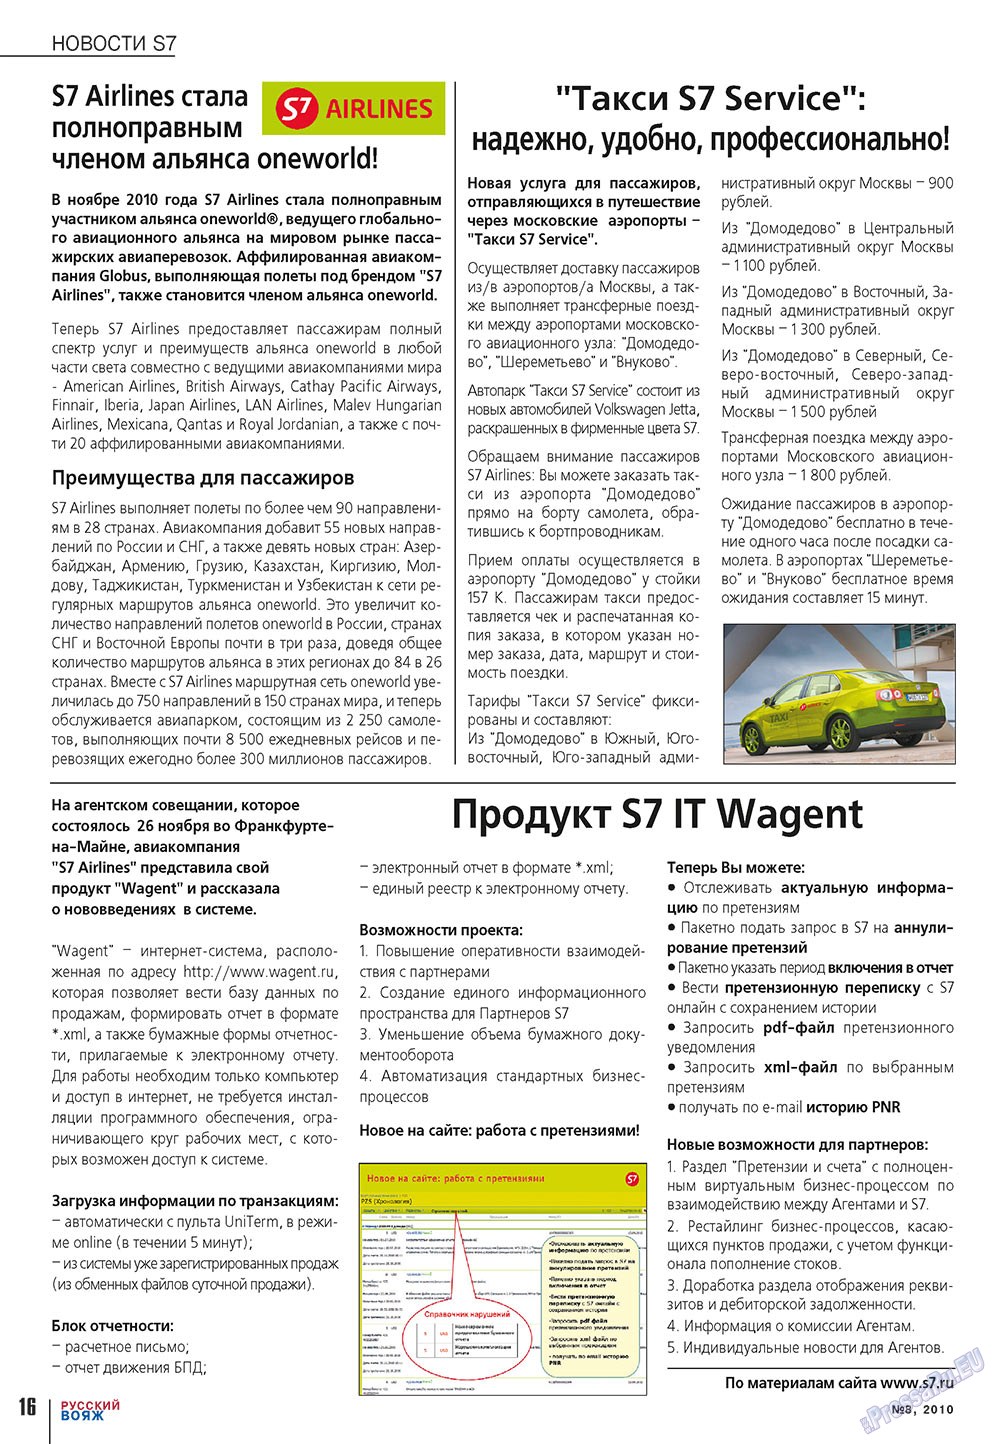 Русский вояж (журнал). 2010 год, номер 8, стр. 16